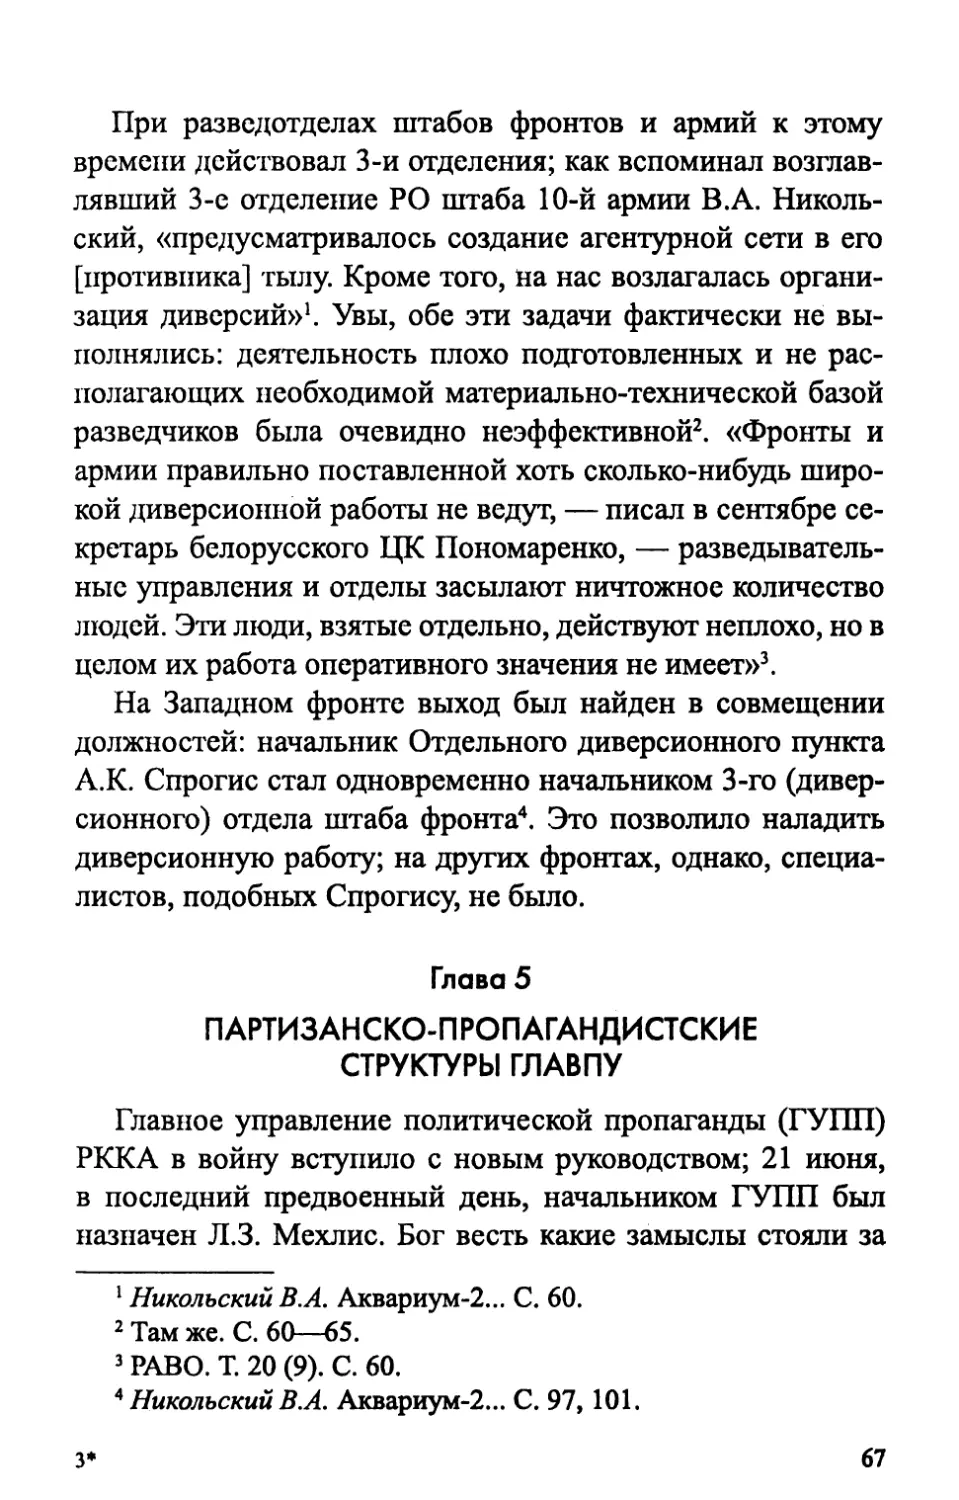 Глава 5. Партизанско-пропагандистские структуры ГлавПУ